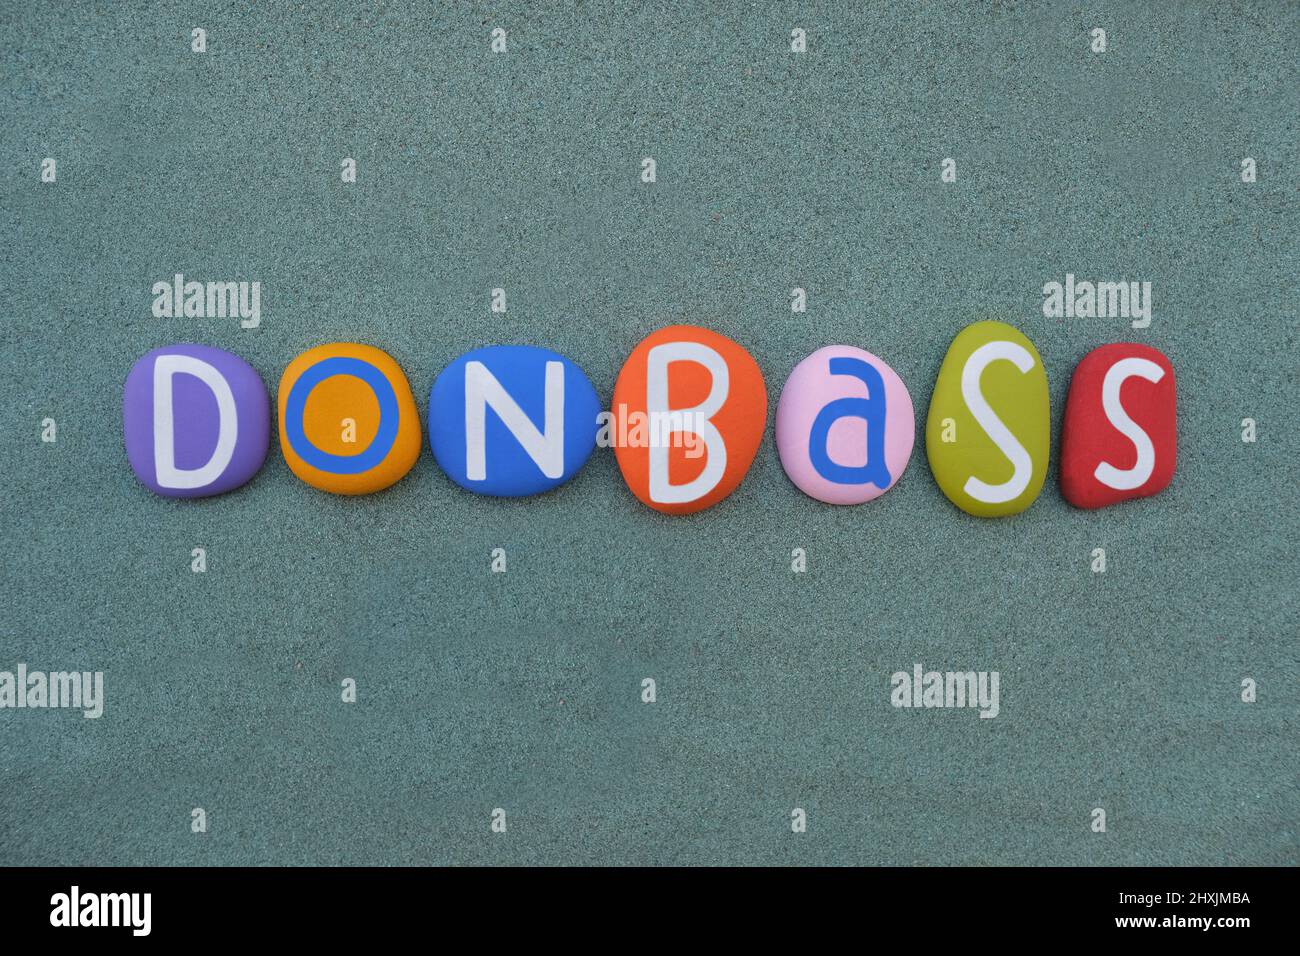 Le Donbass, région historique, culturelle et économique du sud-est de l'Ukraine composée de lettres de pierre multicolores peintes à la main sur du sable vert Banque D'Images